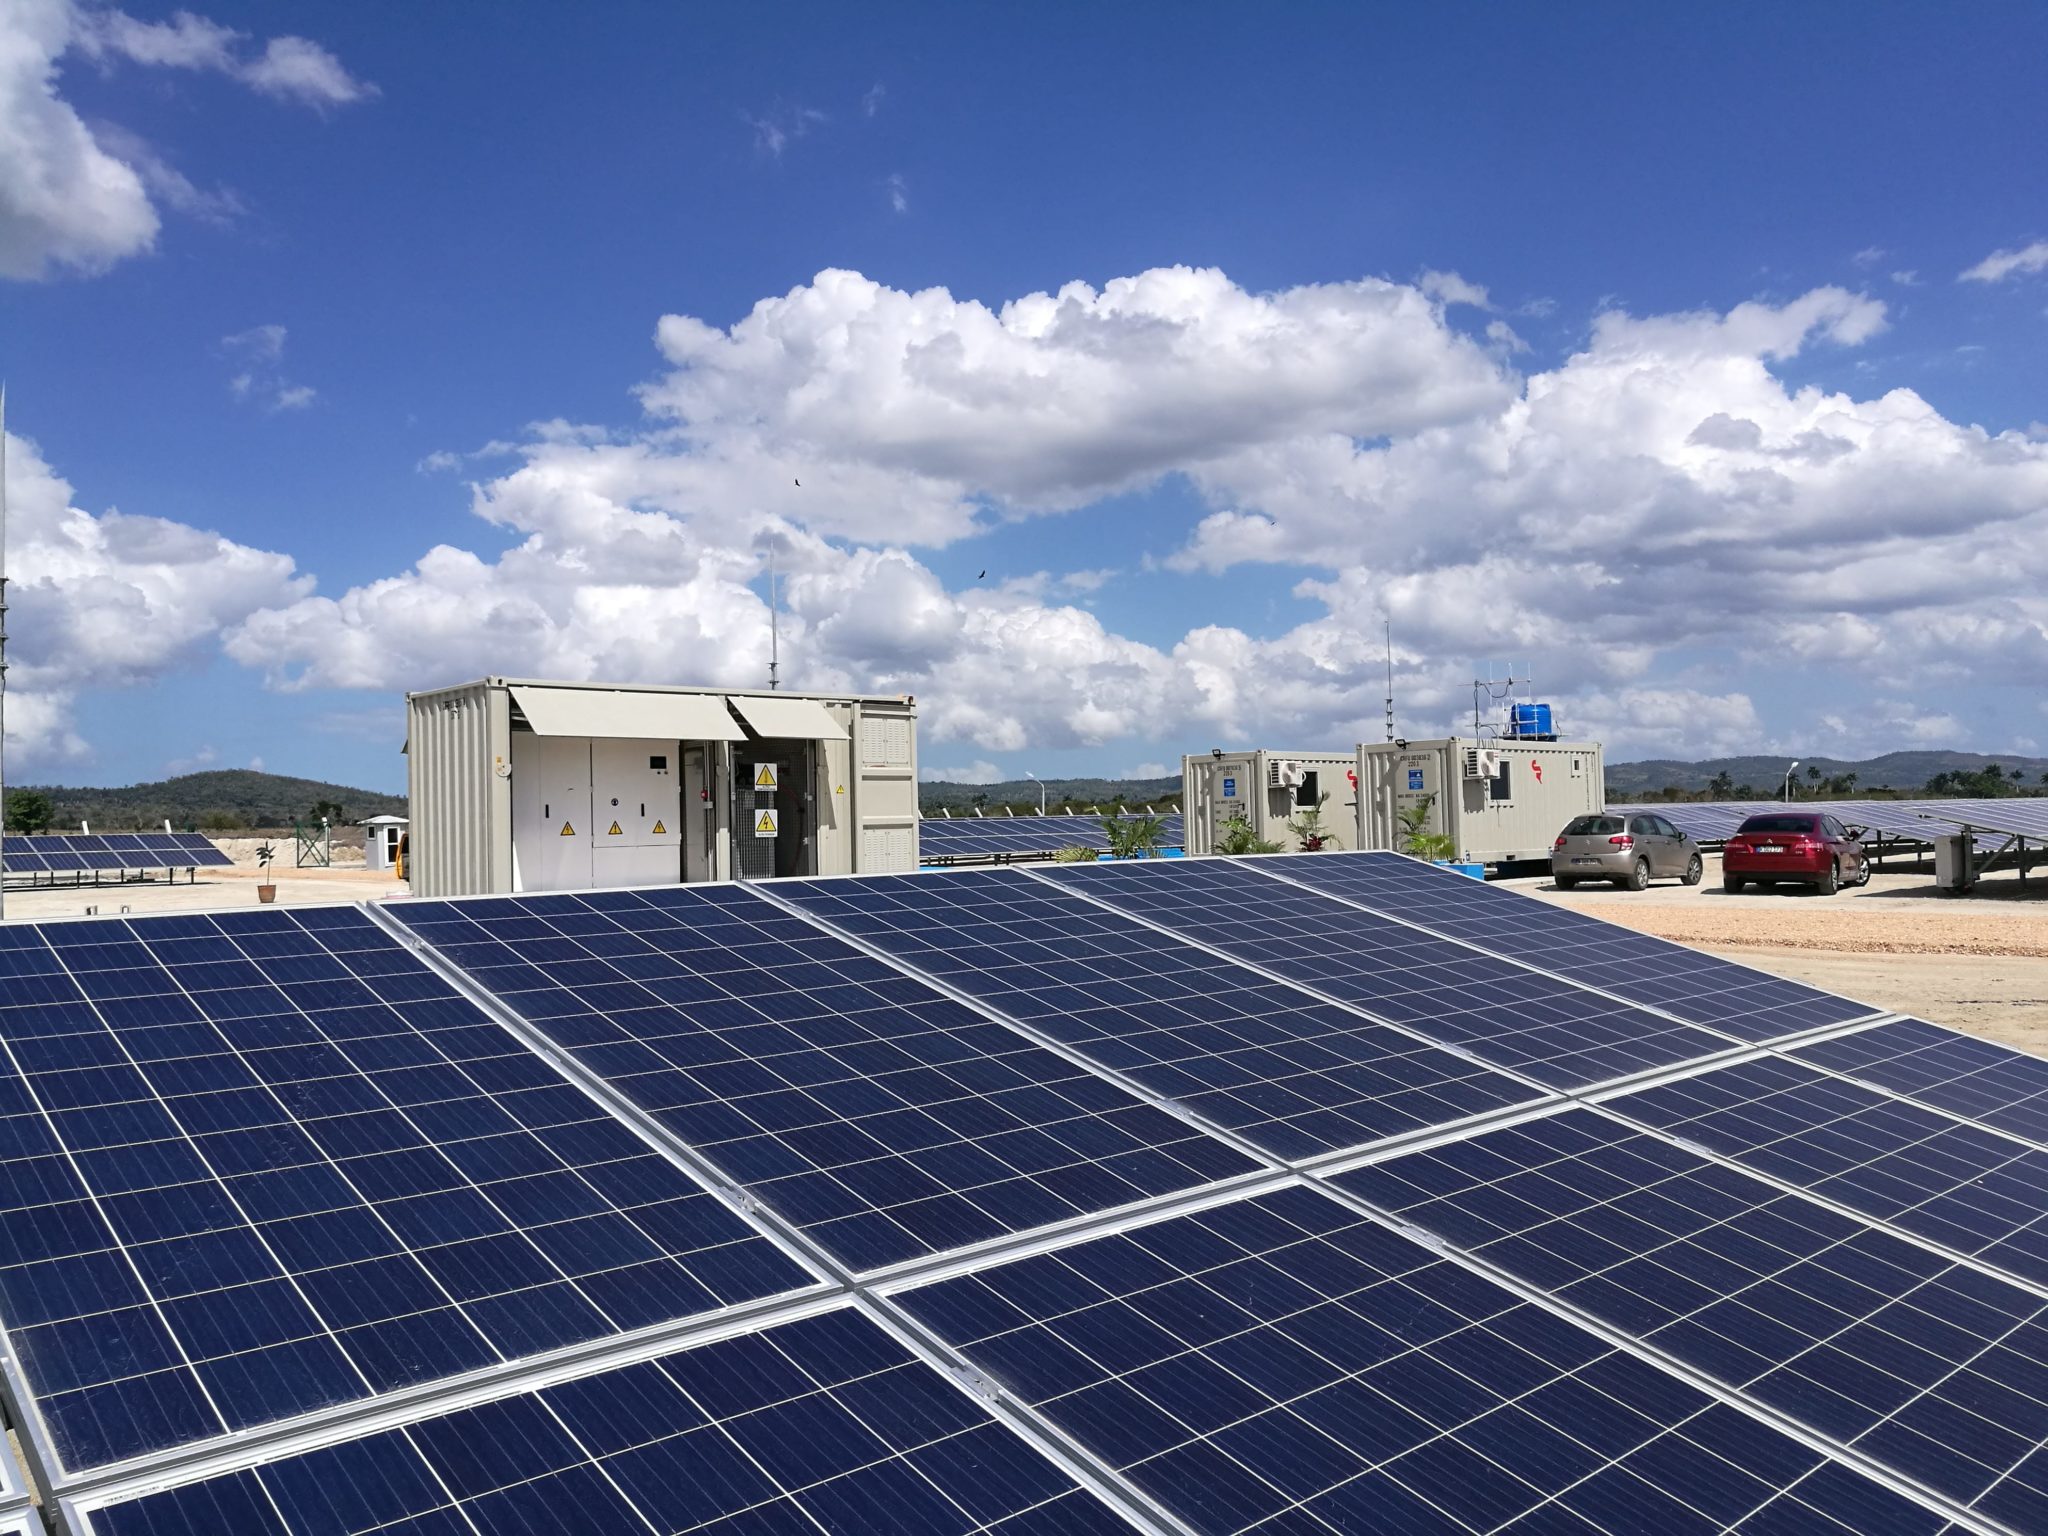 Energie solaire pour station de traitement - CR Technology Systems